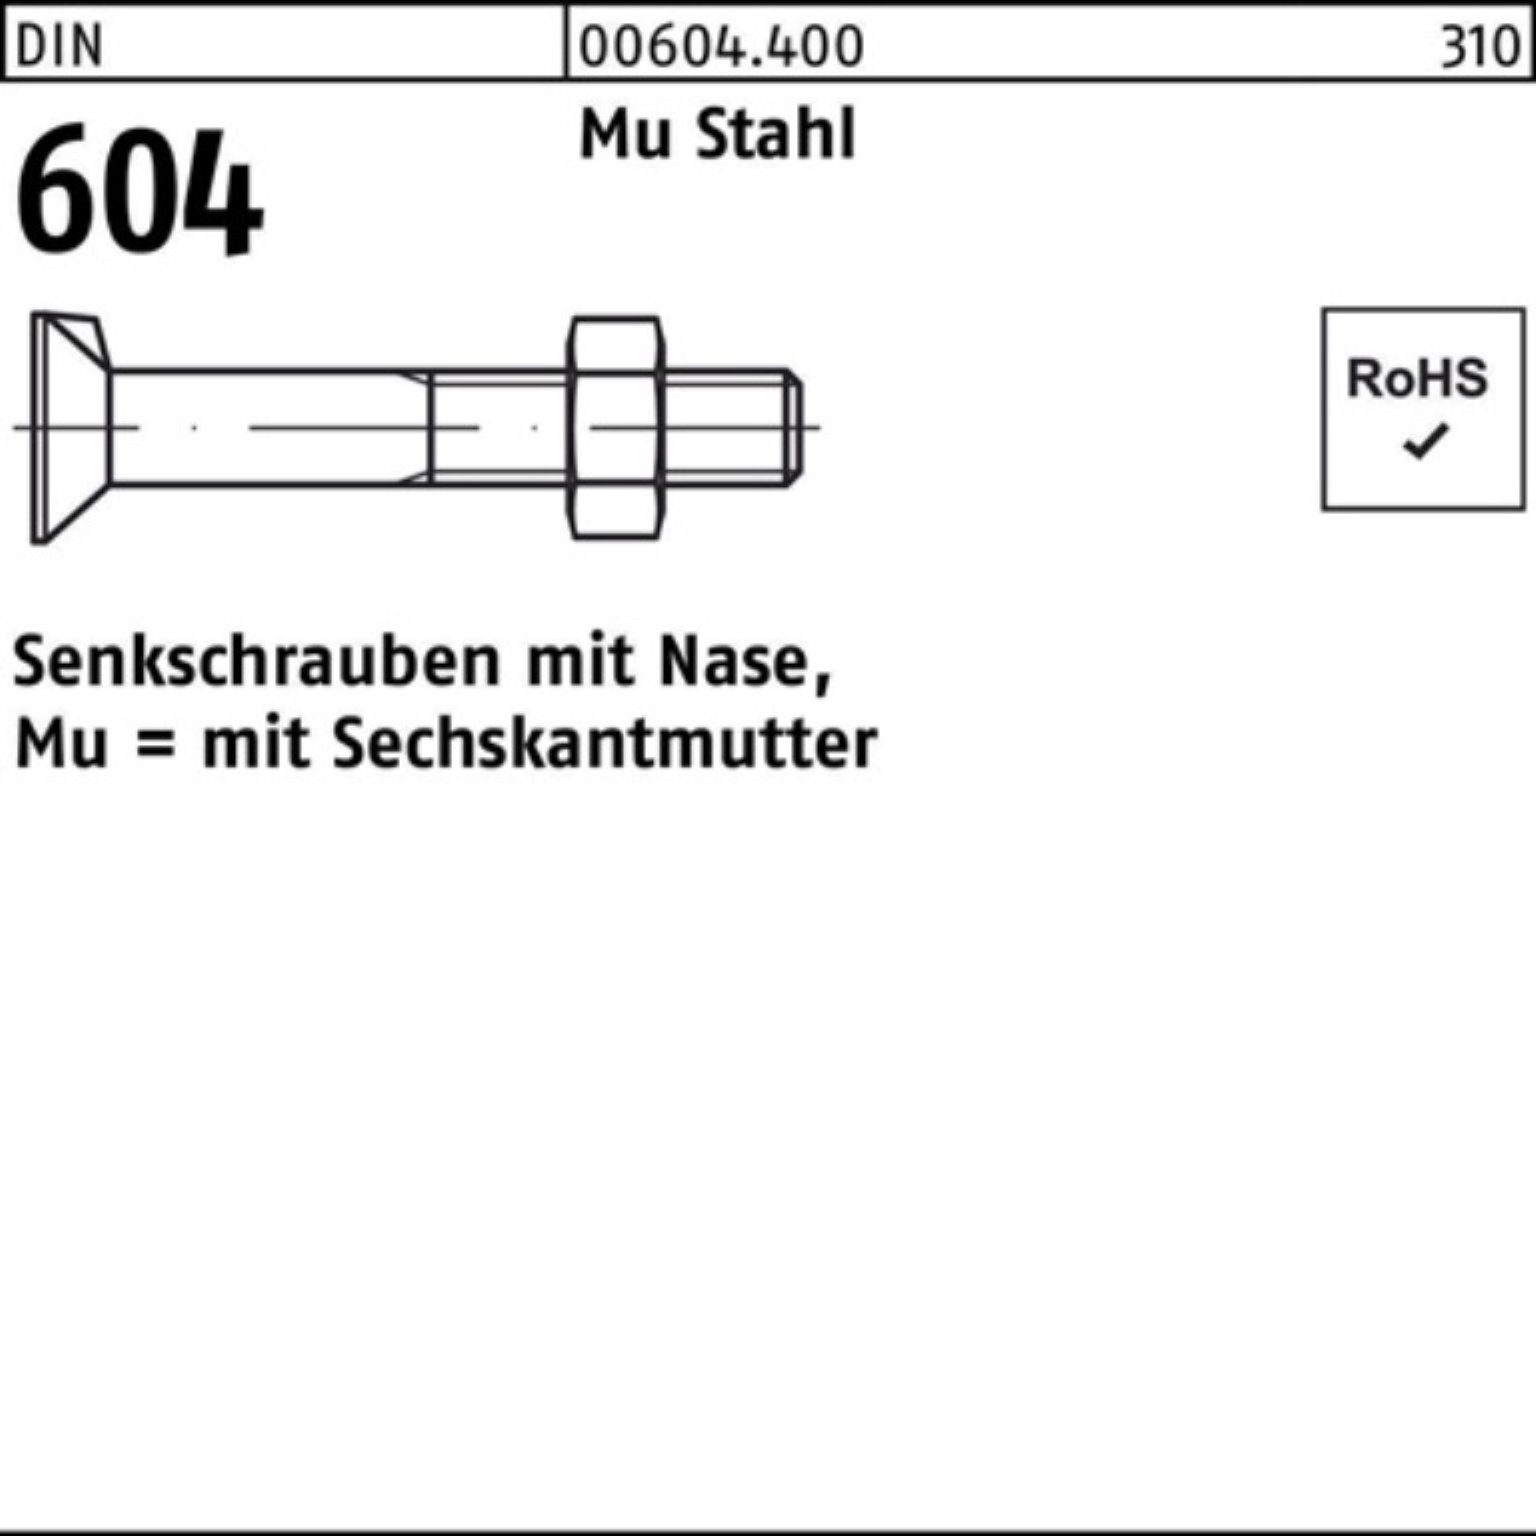 Reyher Senkschraube 500er Pack 25 Nase/6-ktmutter 50 604 Mu M6x 4.6 DIN Stahl Senkschraube